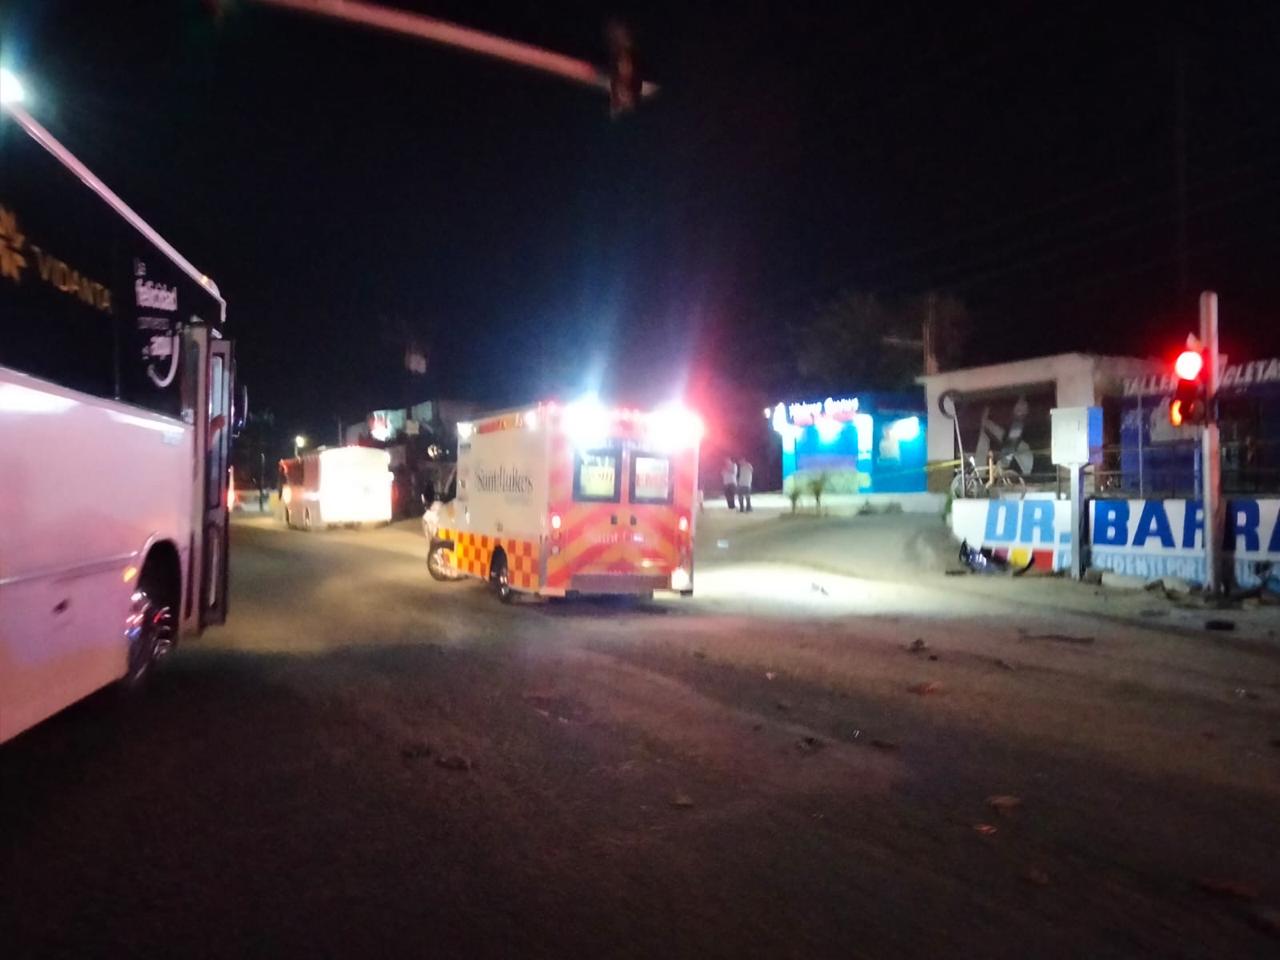 (VIDEO) Camión de transporte de personal se estampa contra puesto de birria en Zacatal